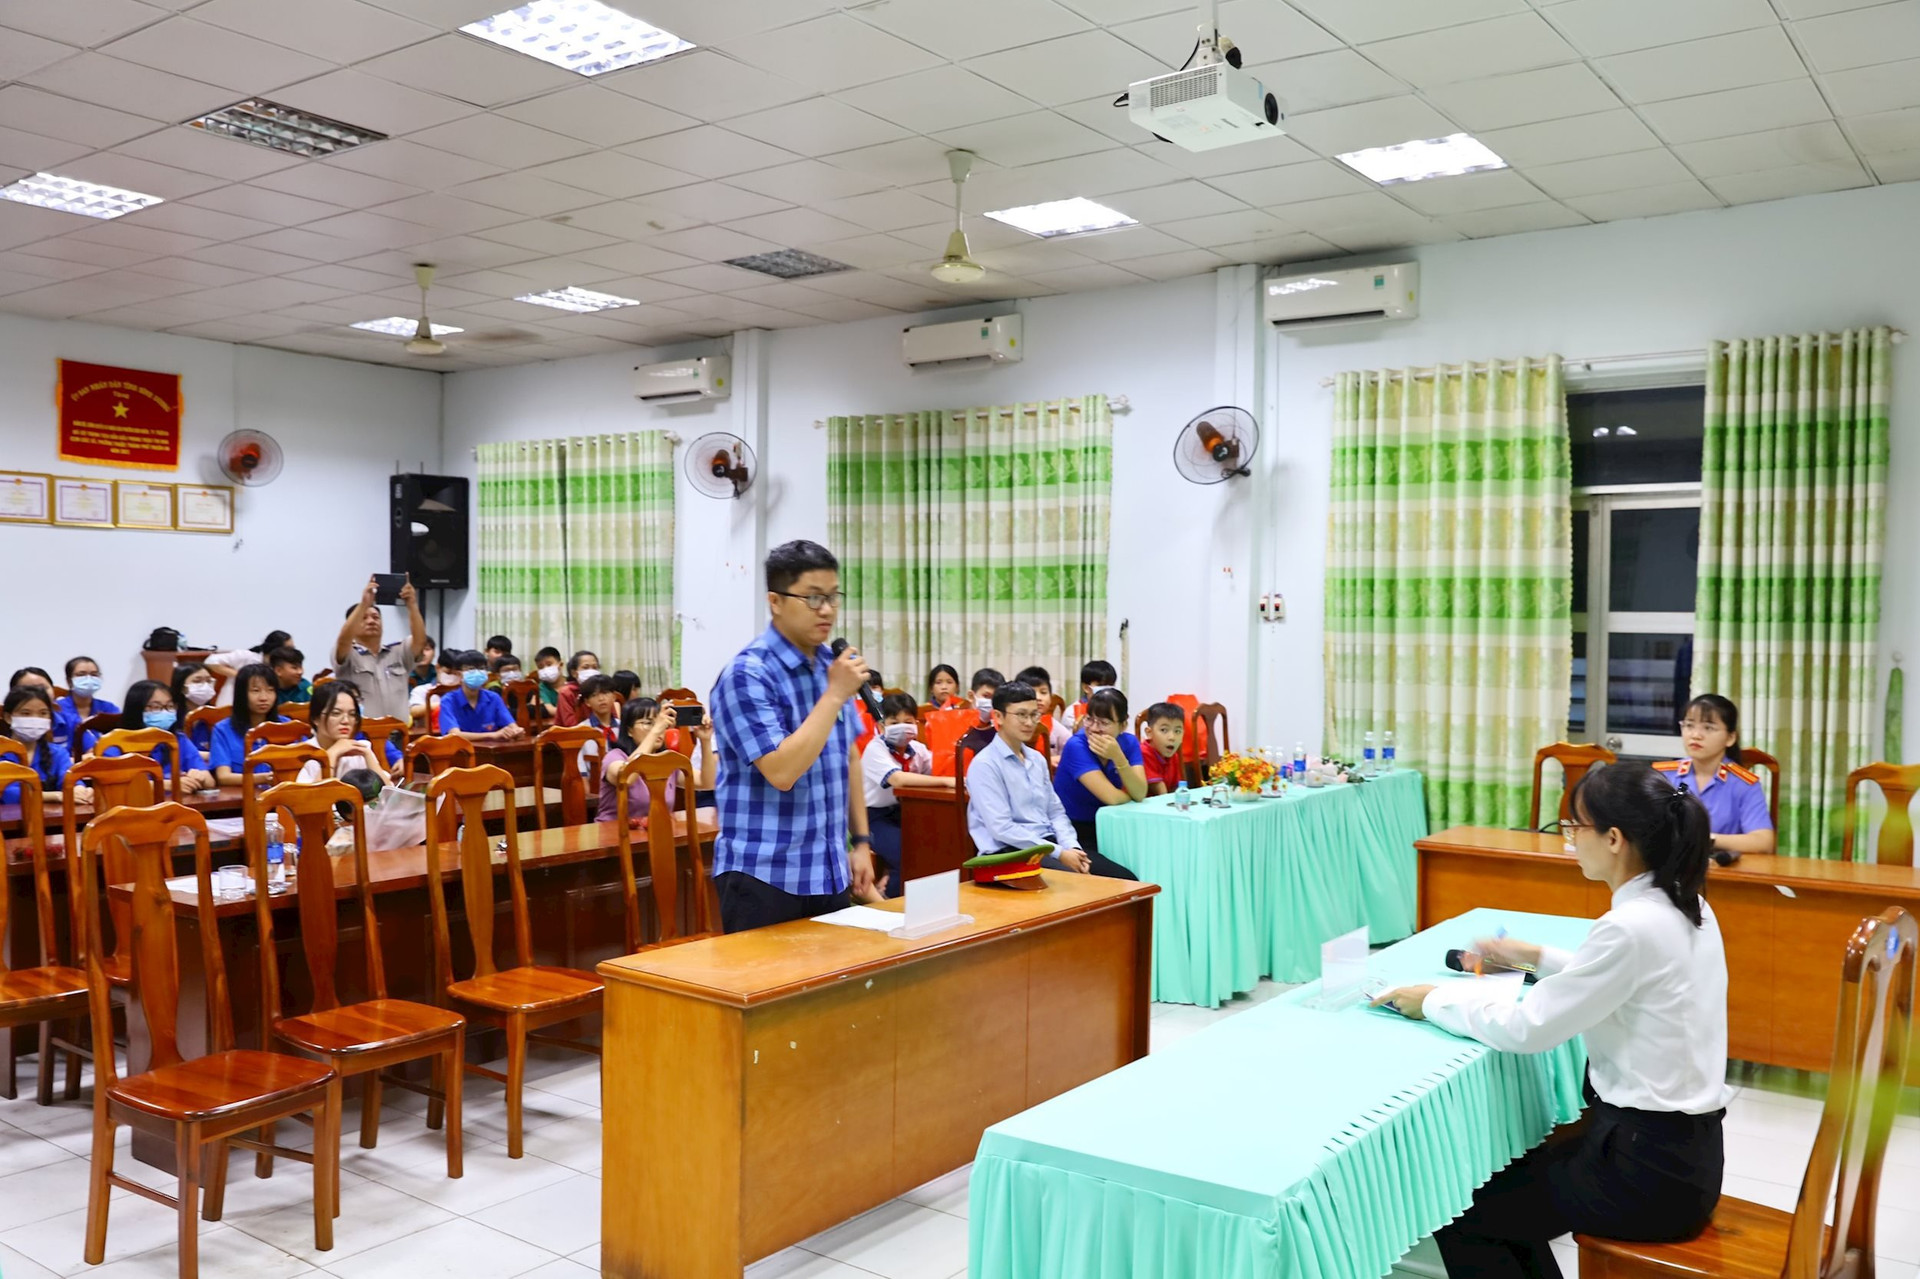 Phiên tòa giả định là hoạt động thường xuyên, trong chuỗi kế hoạch tuyên truyền, phổ biến pháp luật do Chi đoàn TAND TP Thuận An khởi xướng thực hiện đã đạt được nhiều hiệu quả trong thời gian qua